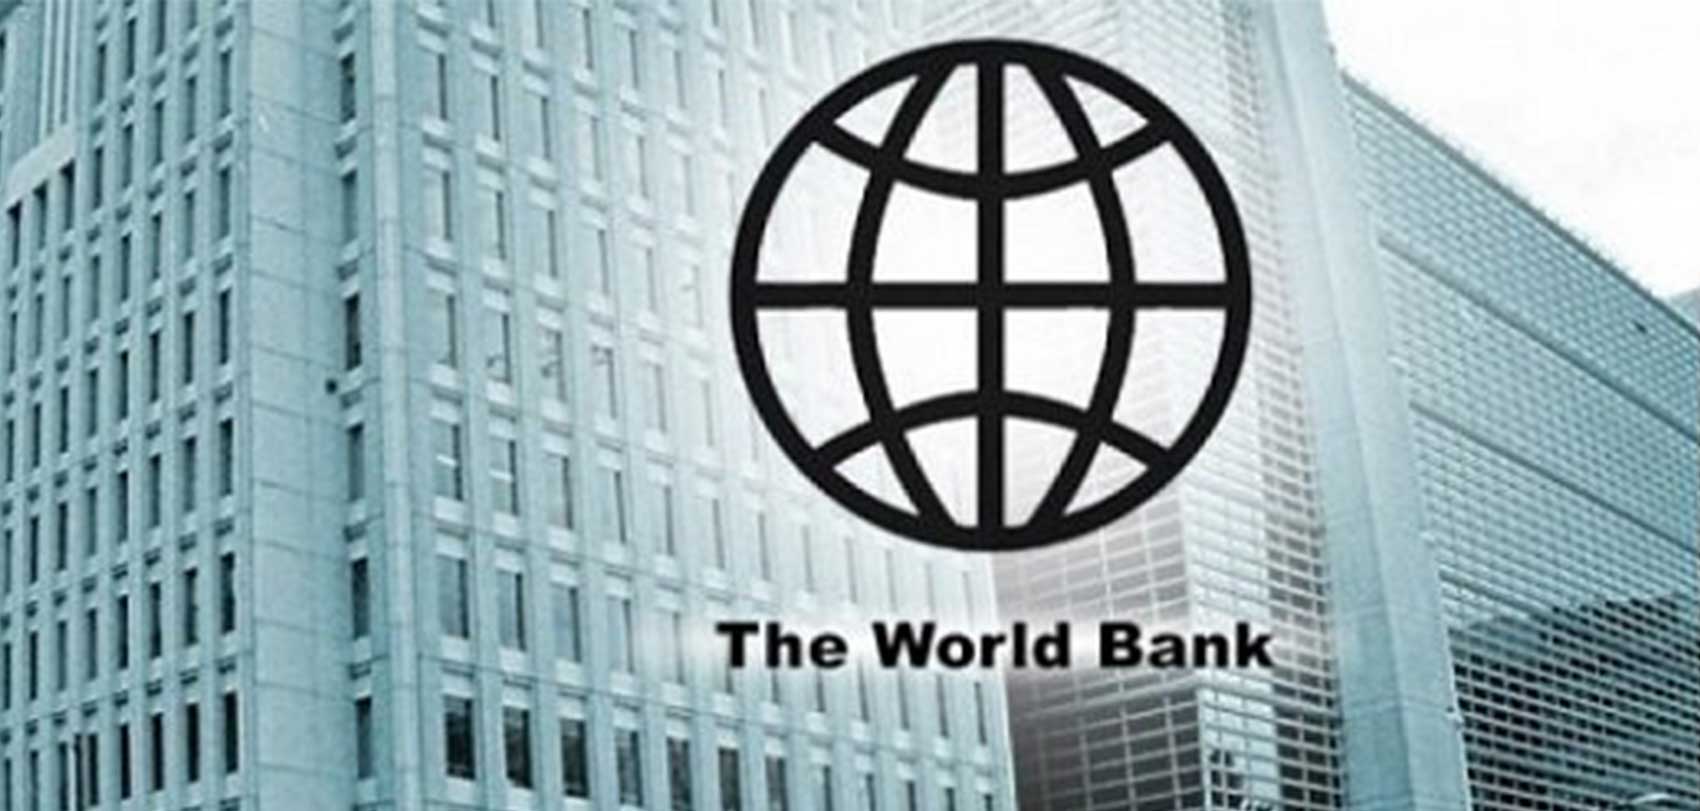 कोरोनाविरुद्धको खोप किन्न विश्व बैंकसँग दुई अर्ब १४ करोड ऋण लिने सम्झौता